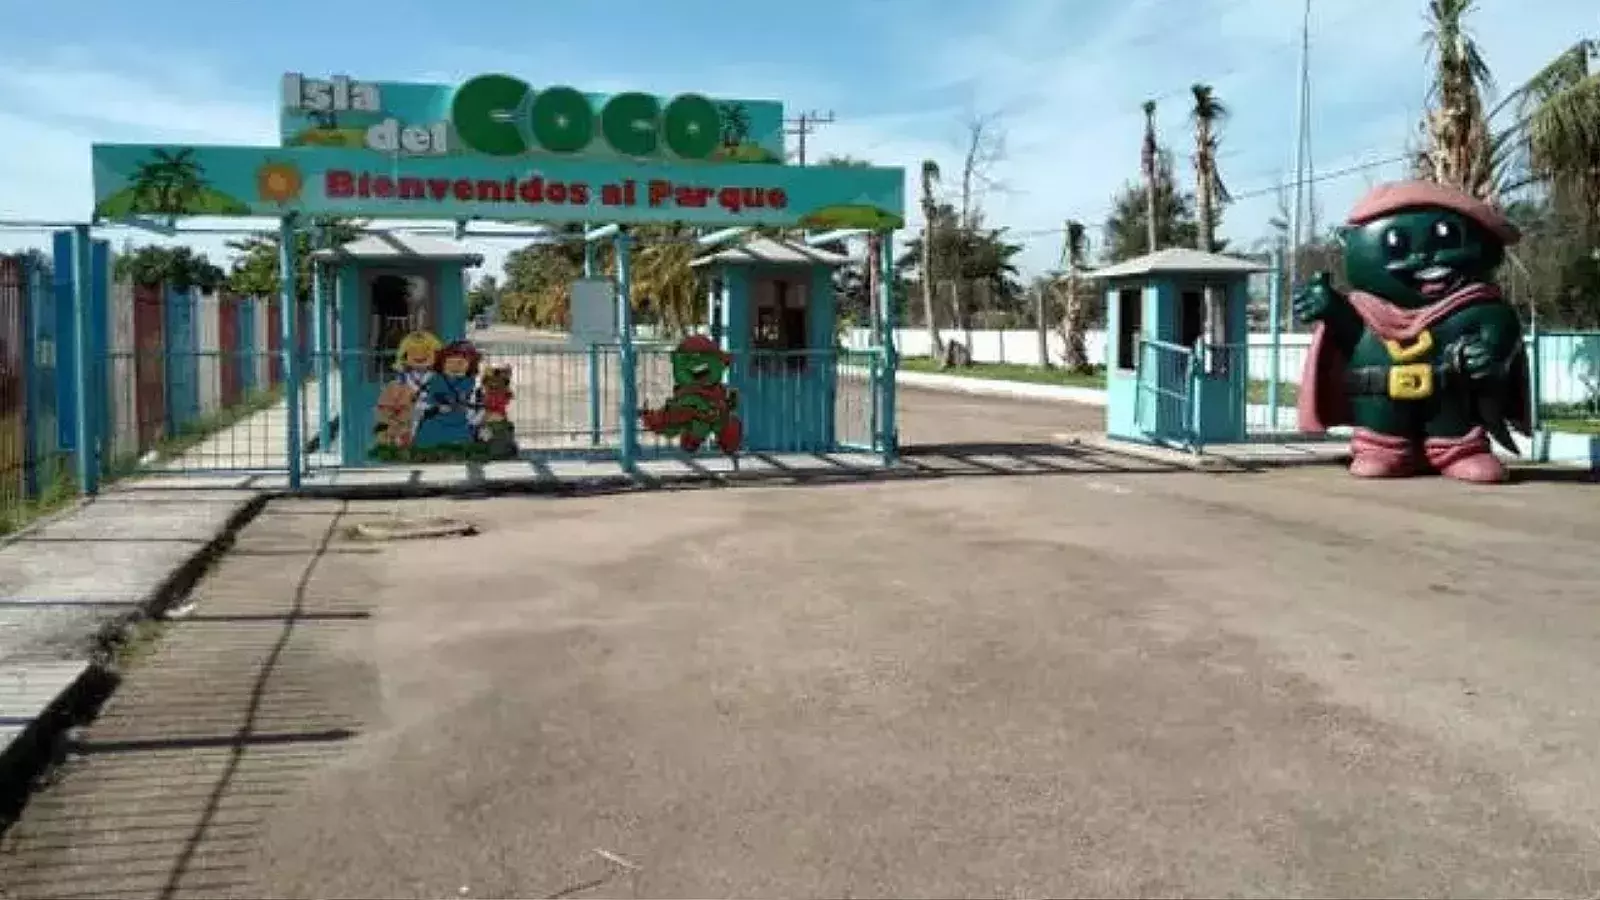 Isla del Coco, parque infantil en Cuba